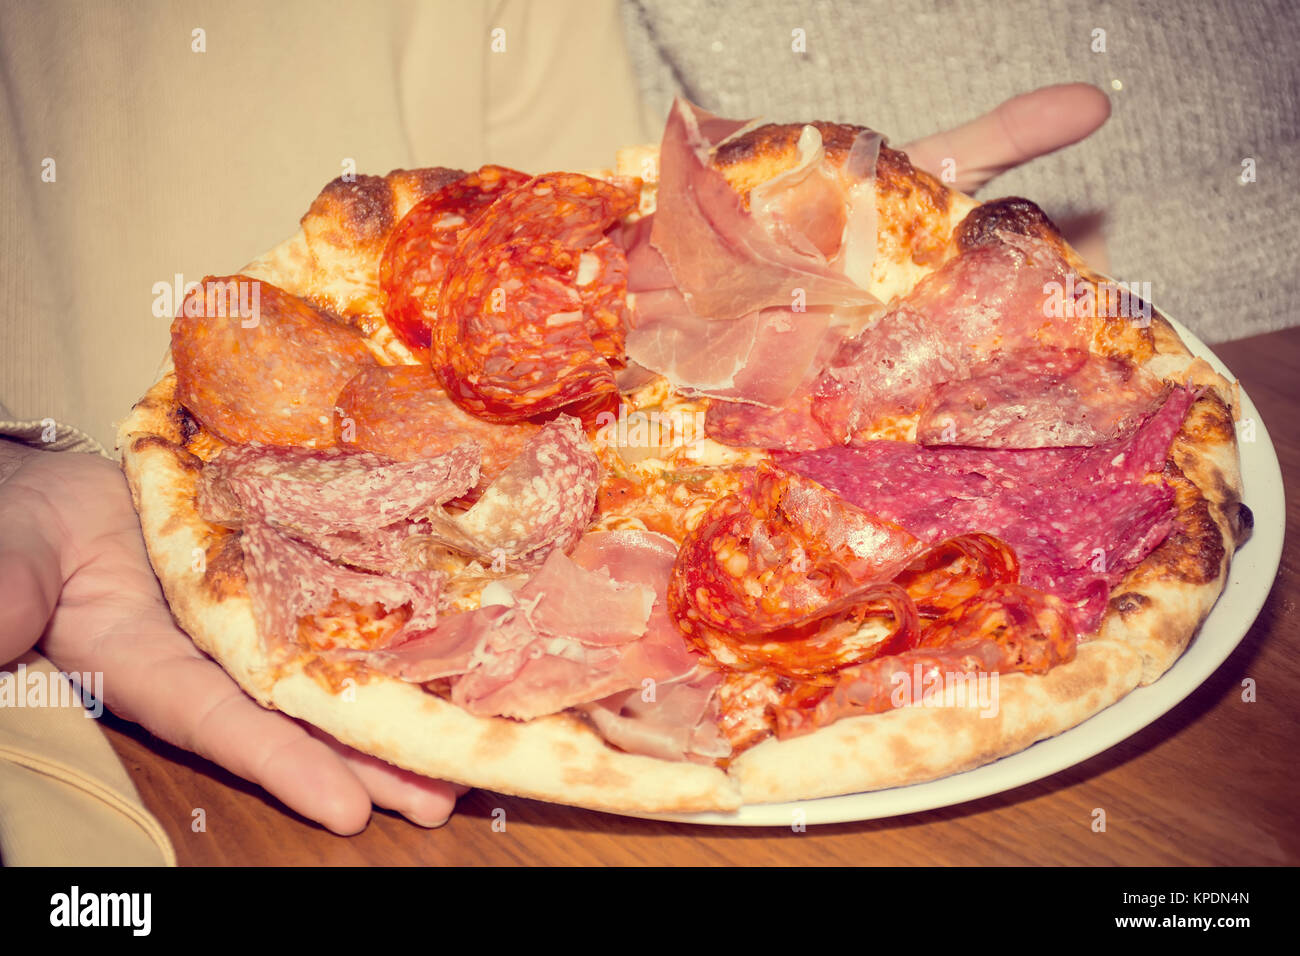 Les hommes&# 39 s mains tiennent italien pizza au jambon et salami Banque D'Images